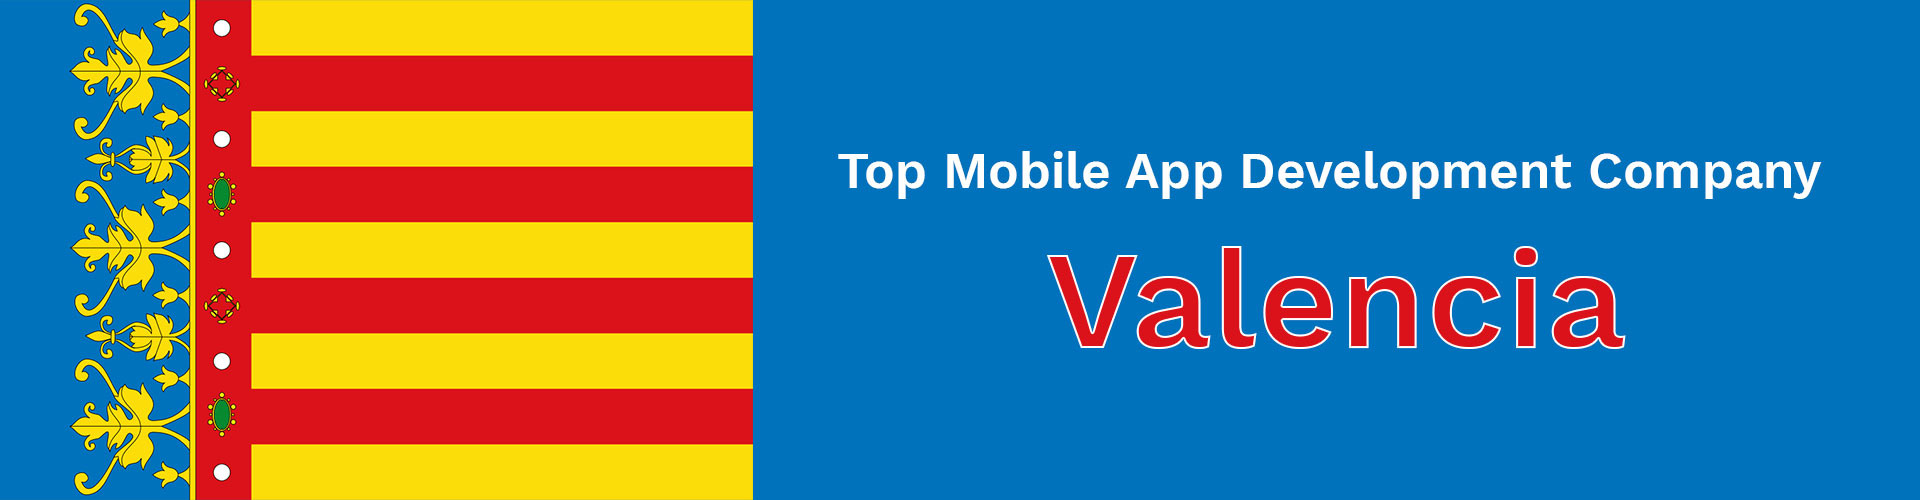 mobile app development company valencia